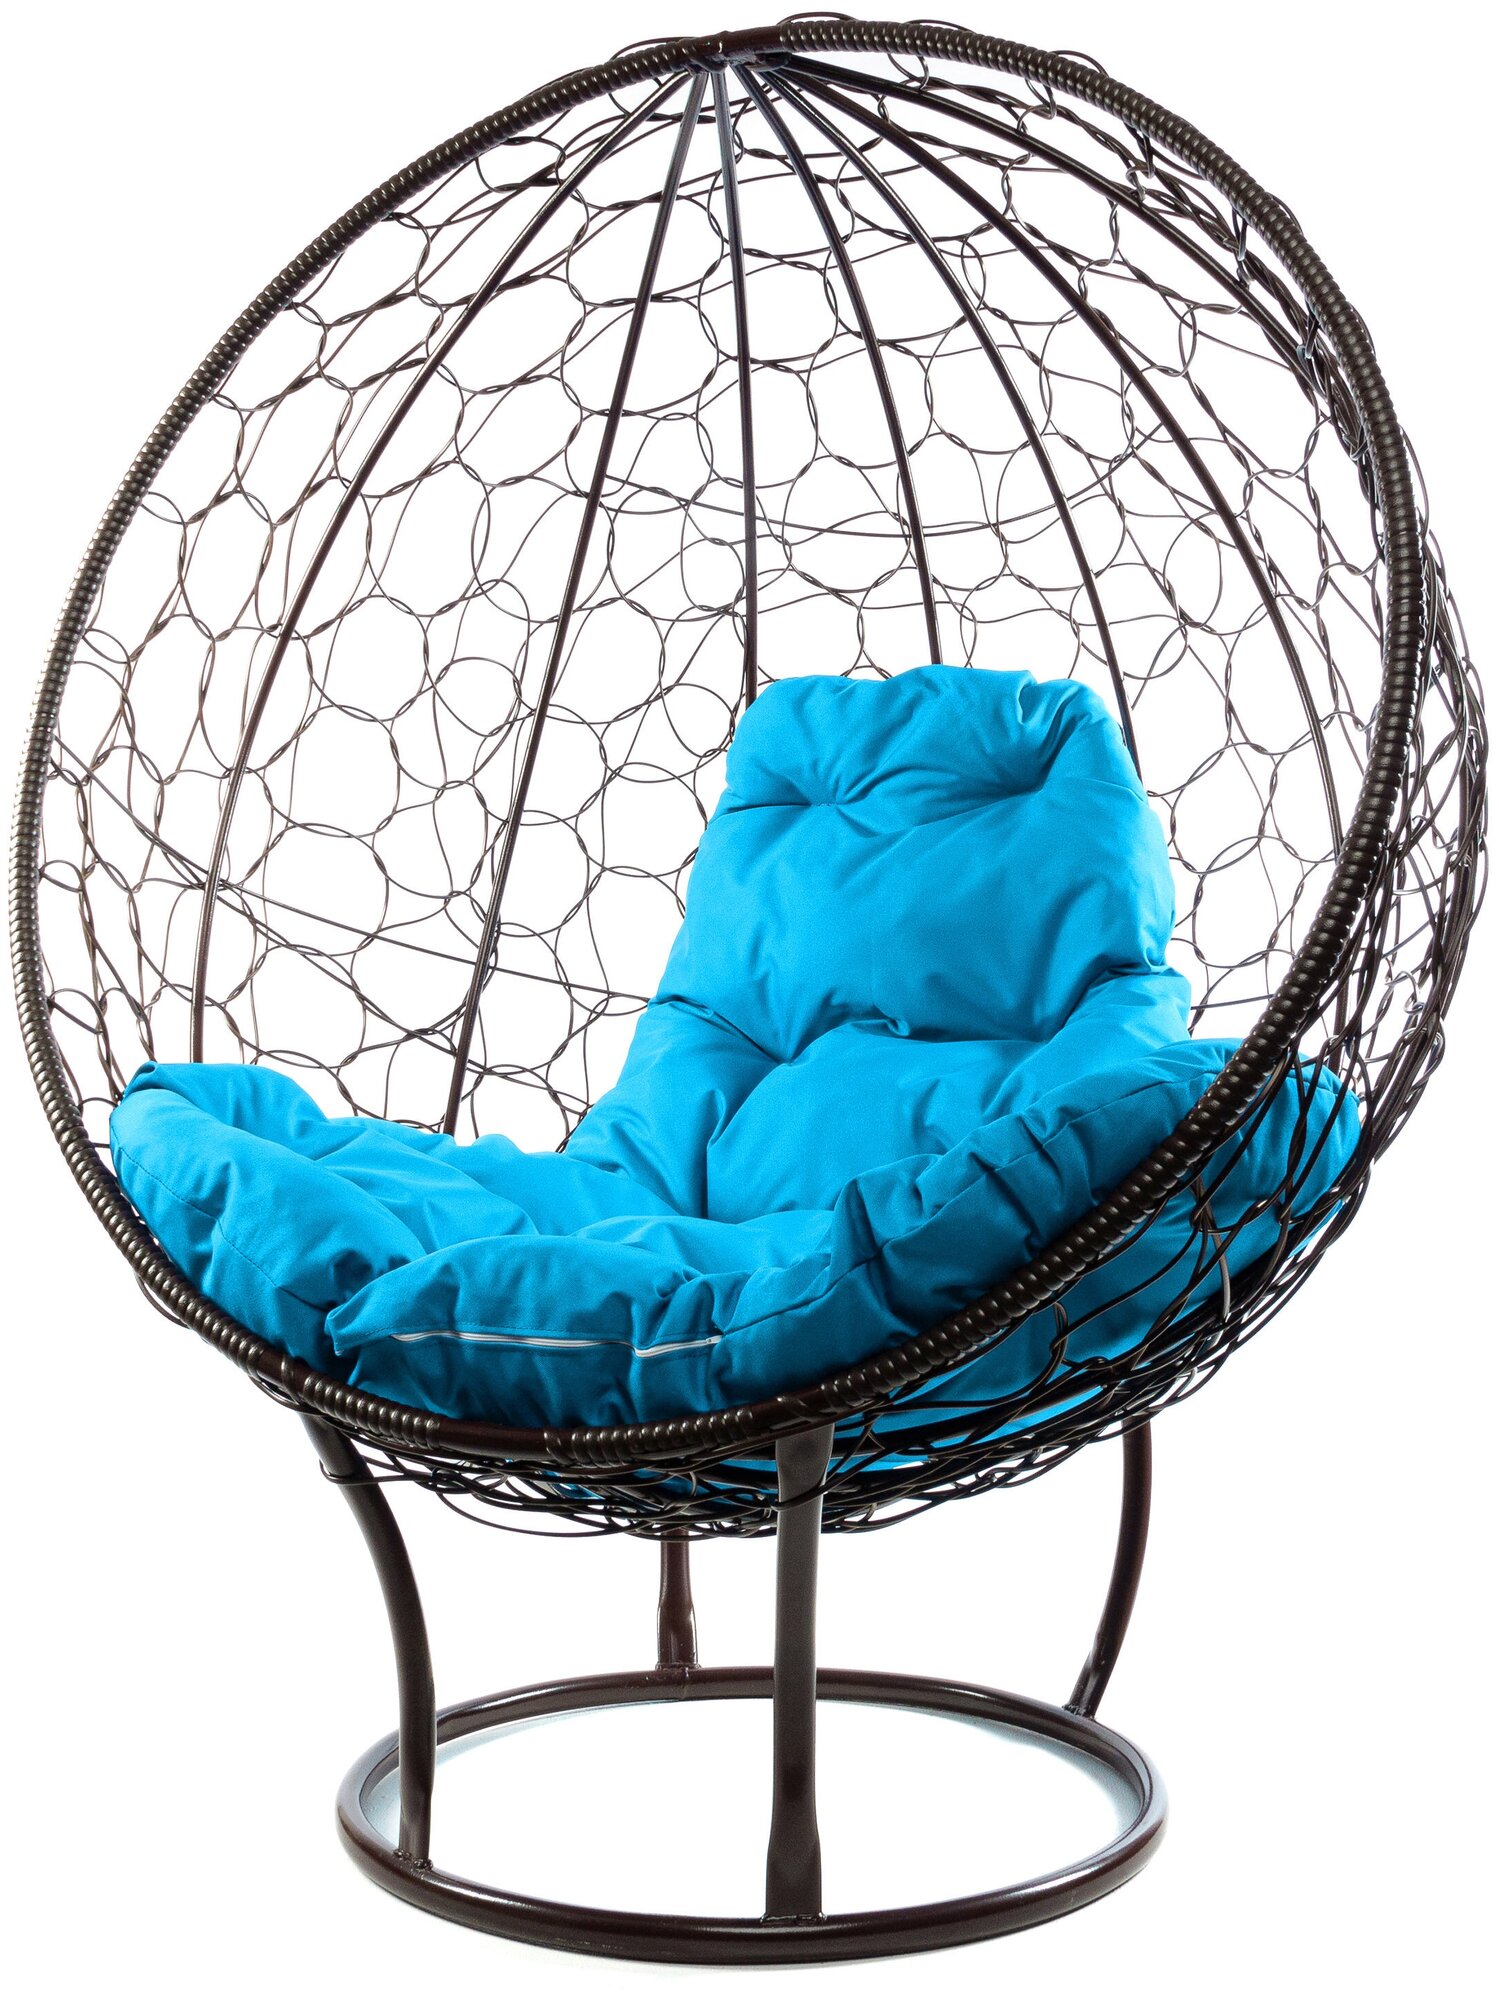 Кресло M-Group круг на подставке ротанг коричневый, голубая подушка - фотография № 1